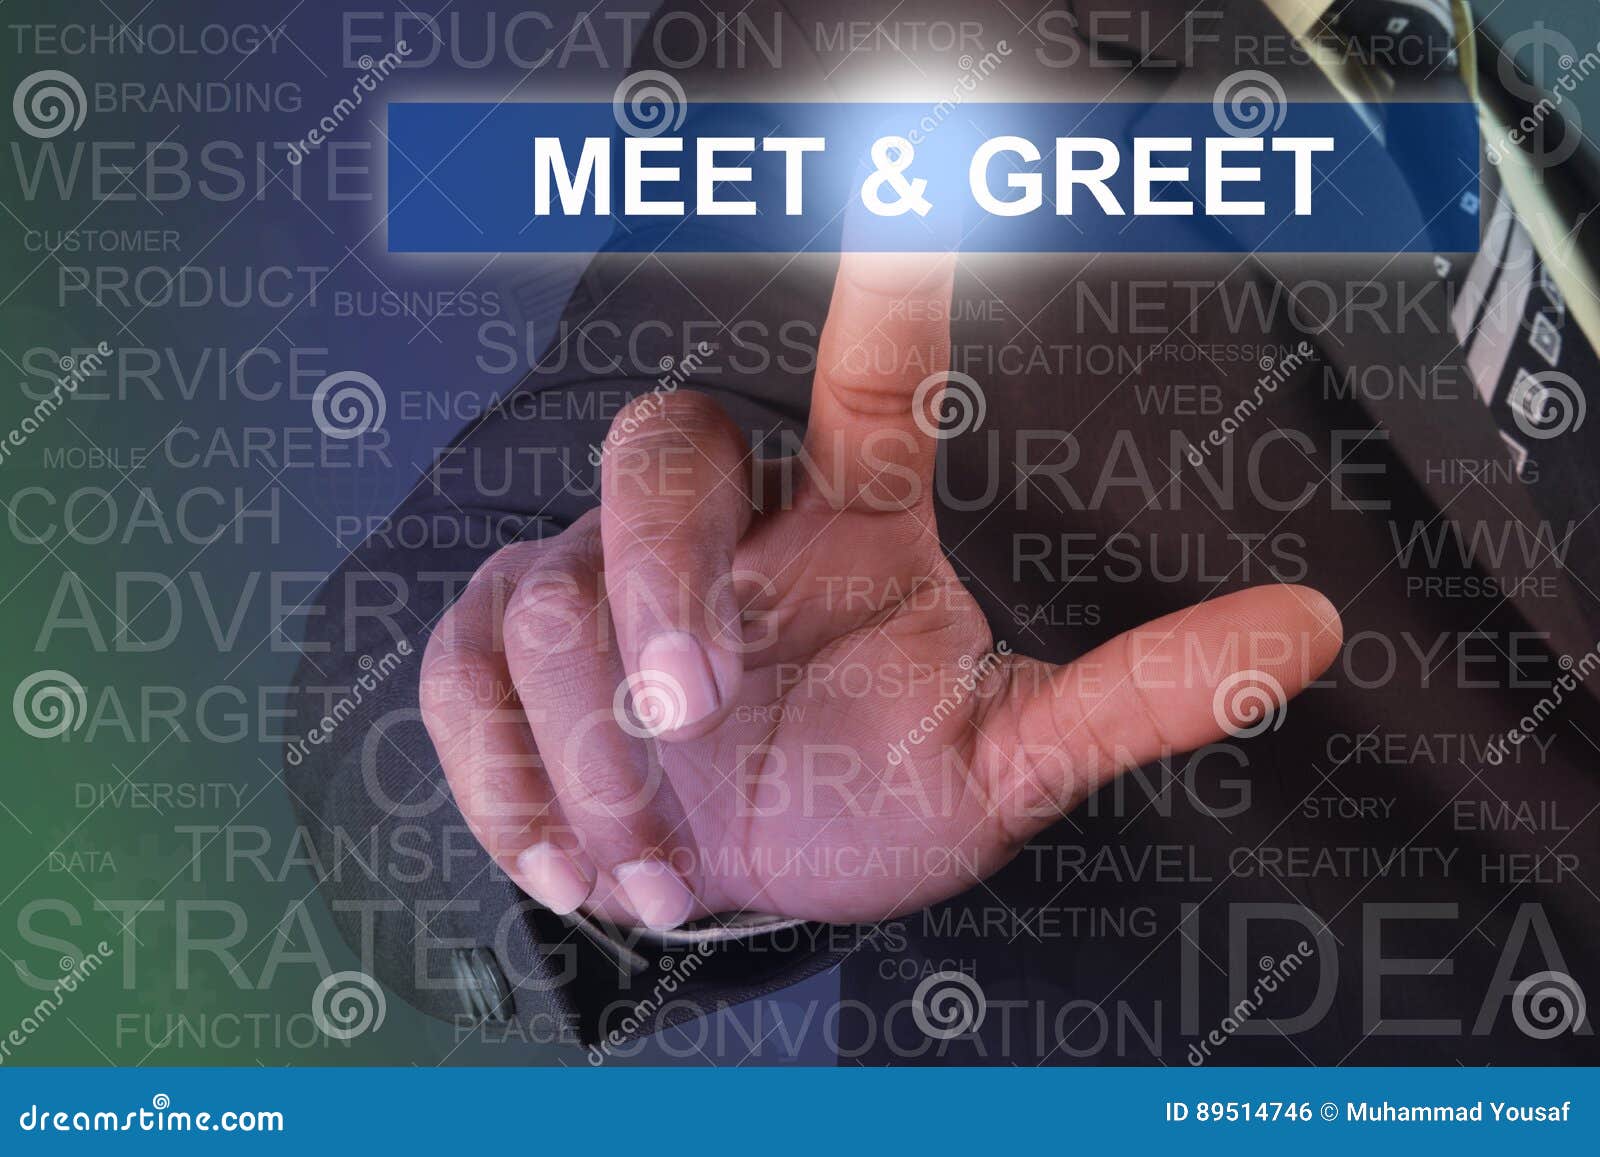 businessman touching meet & greet button on virtual screen